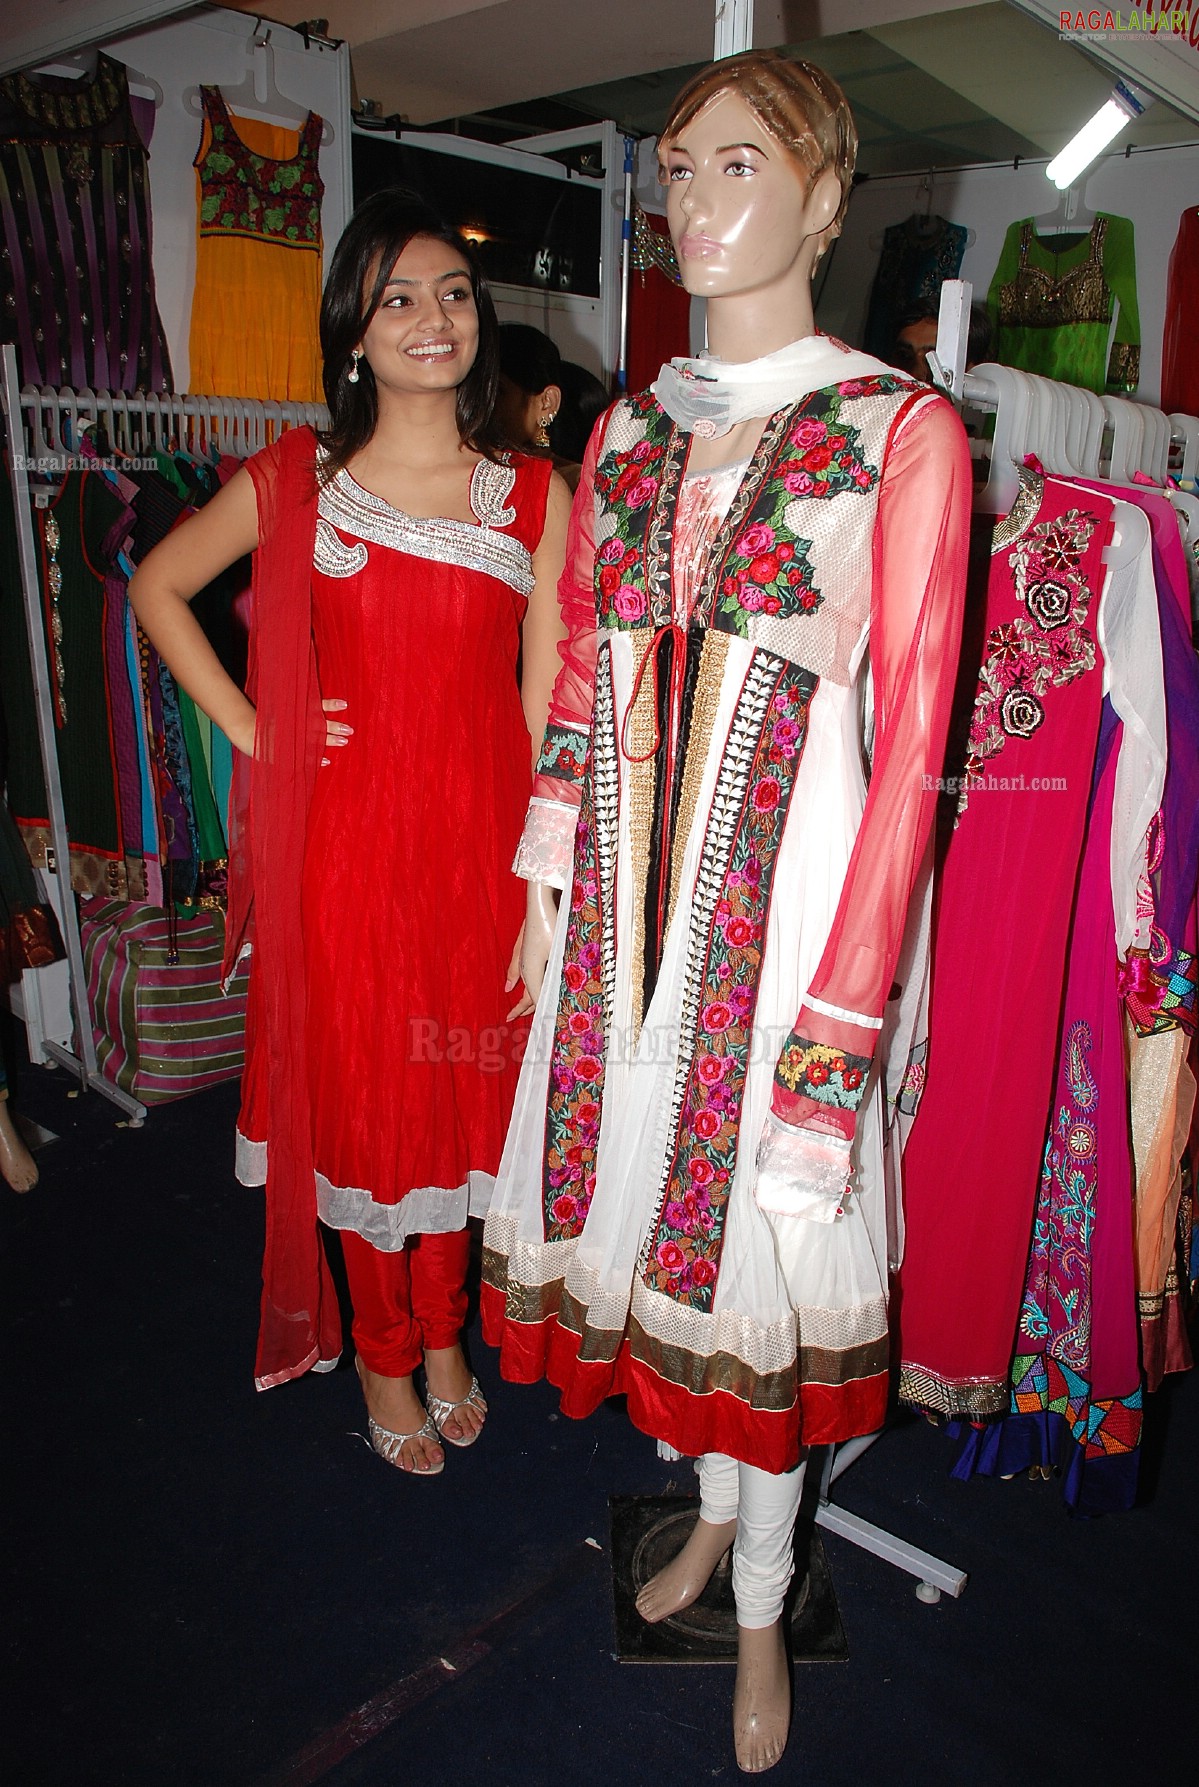 Parinaya Wedding Fair 2011